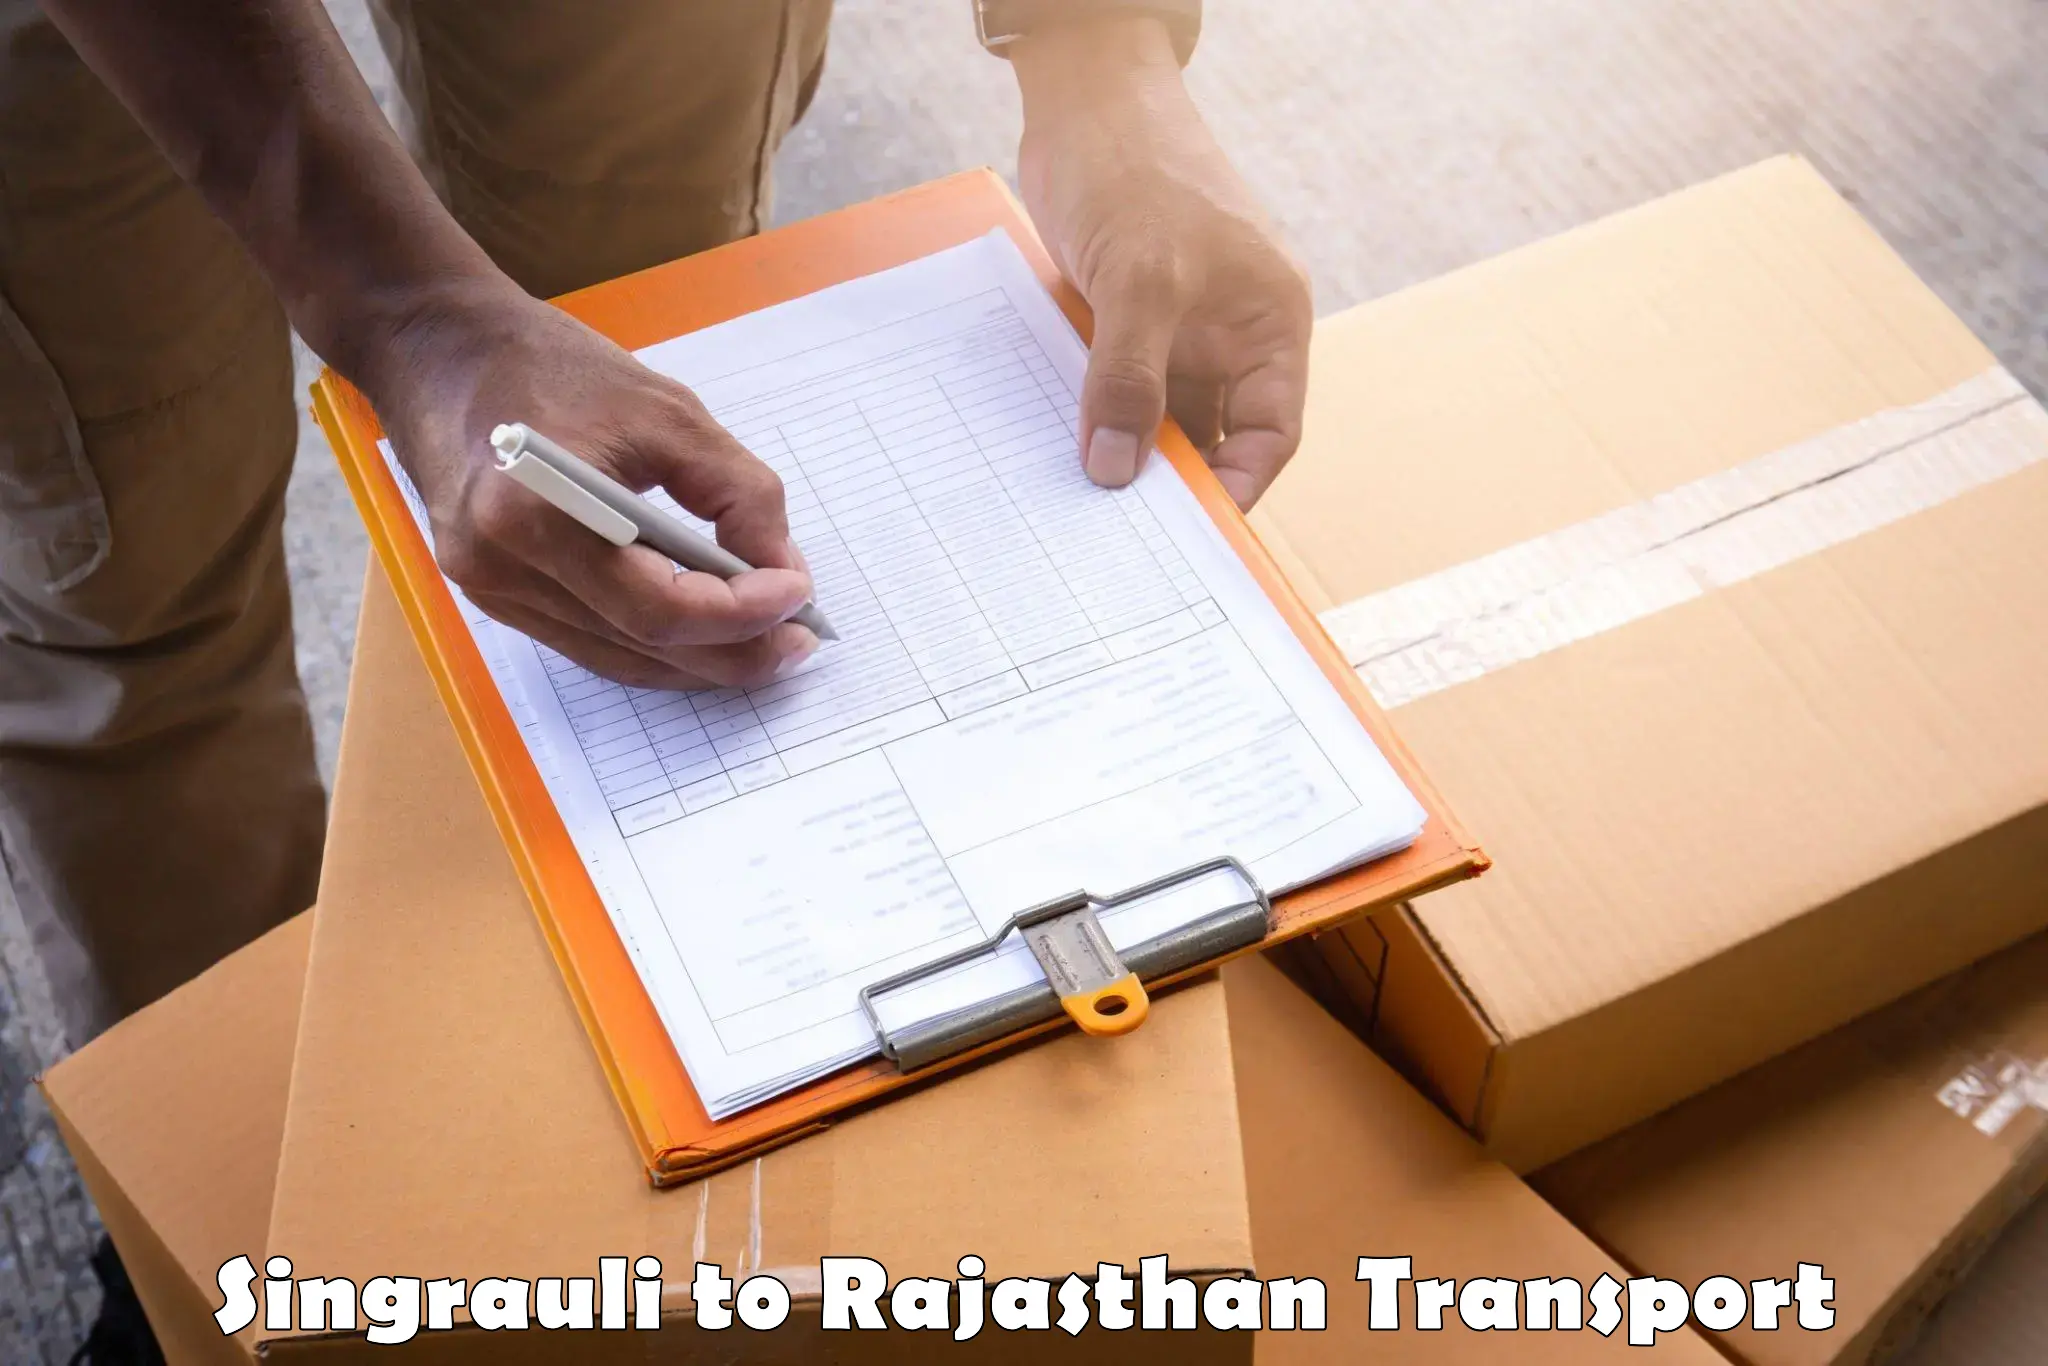 Daily parcel service transport Singrauli to Banswara